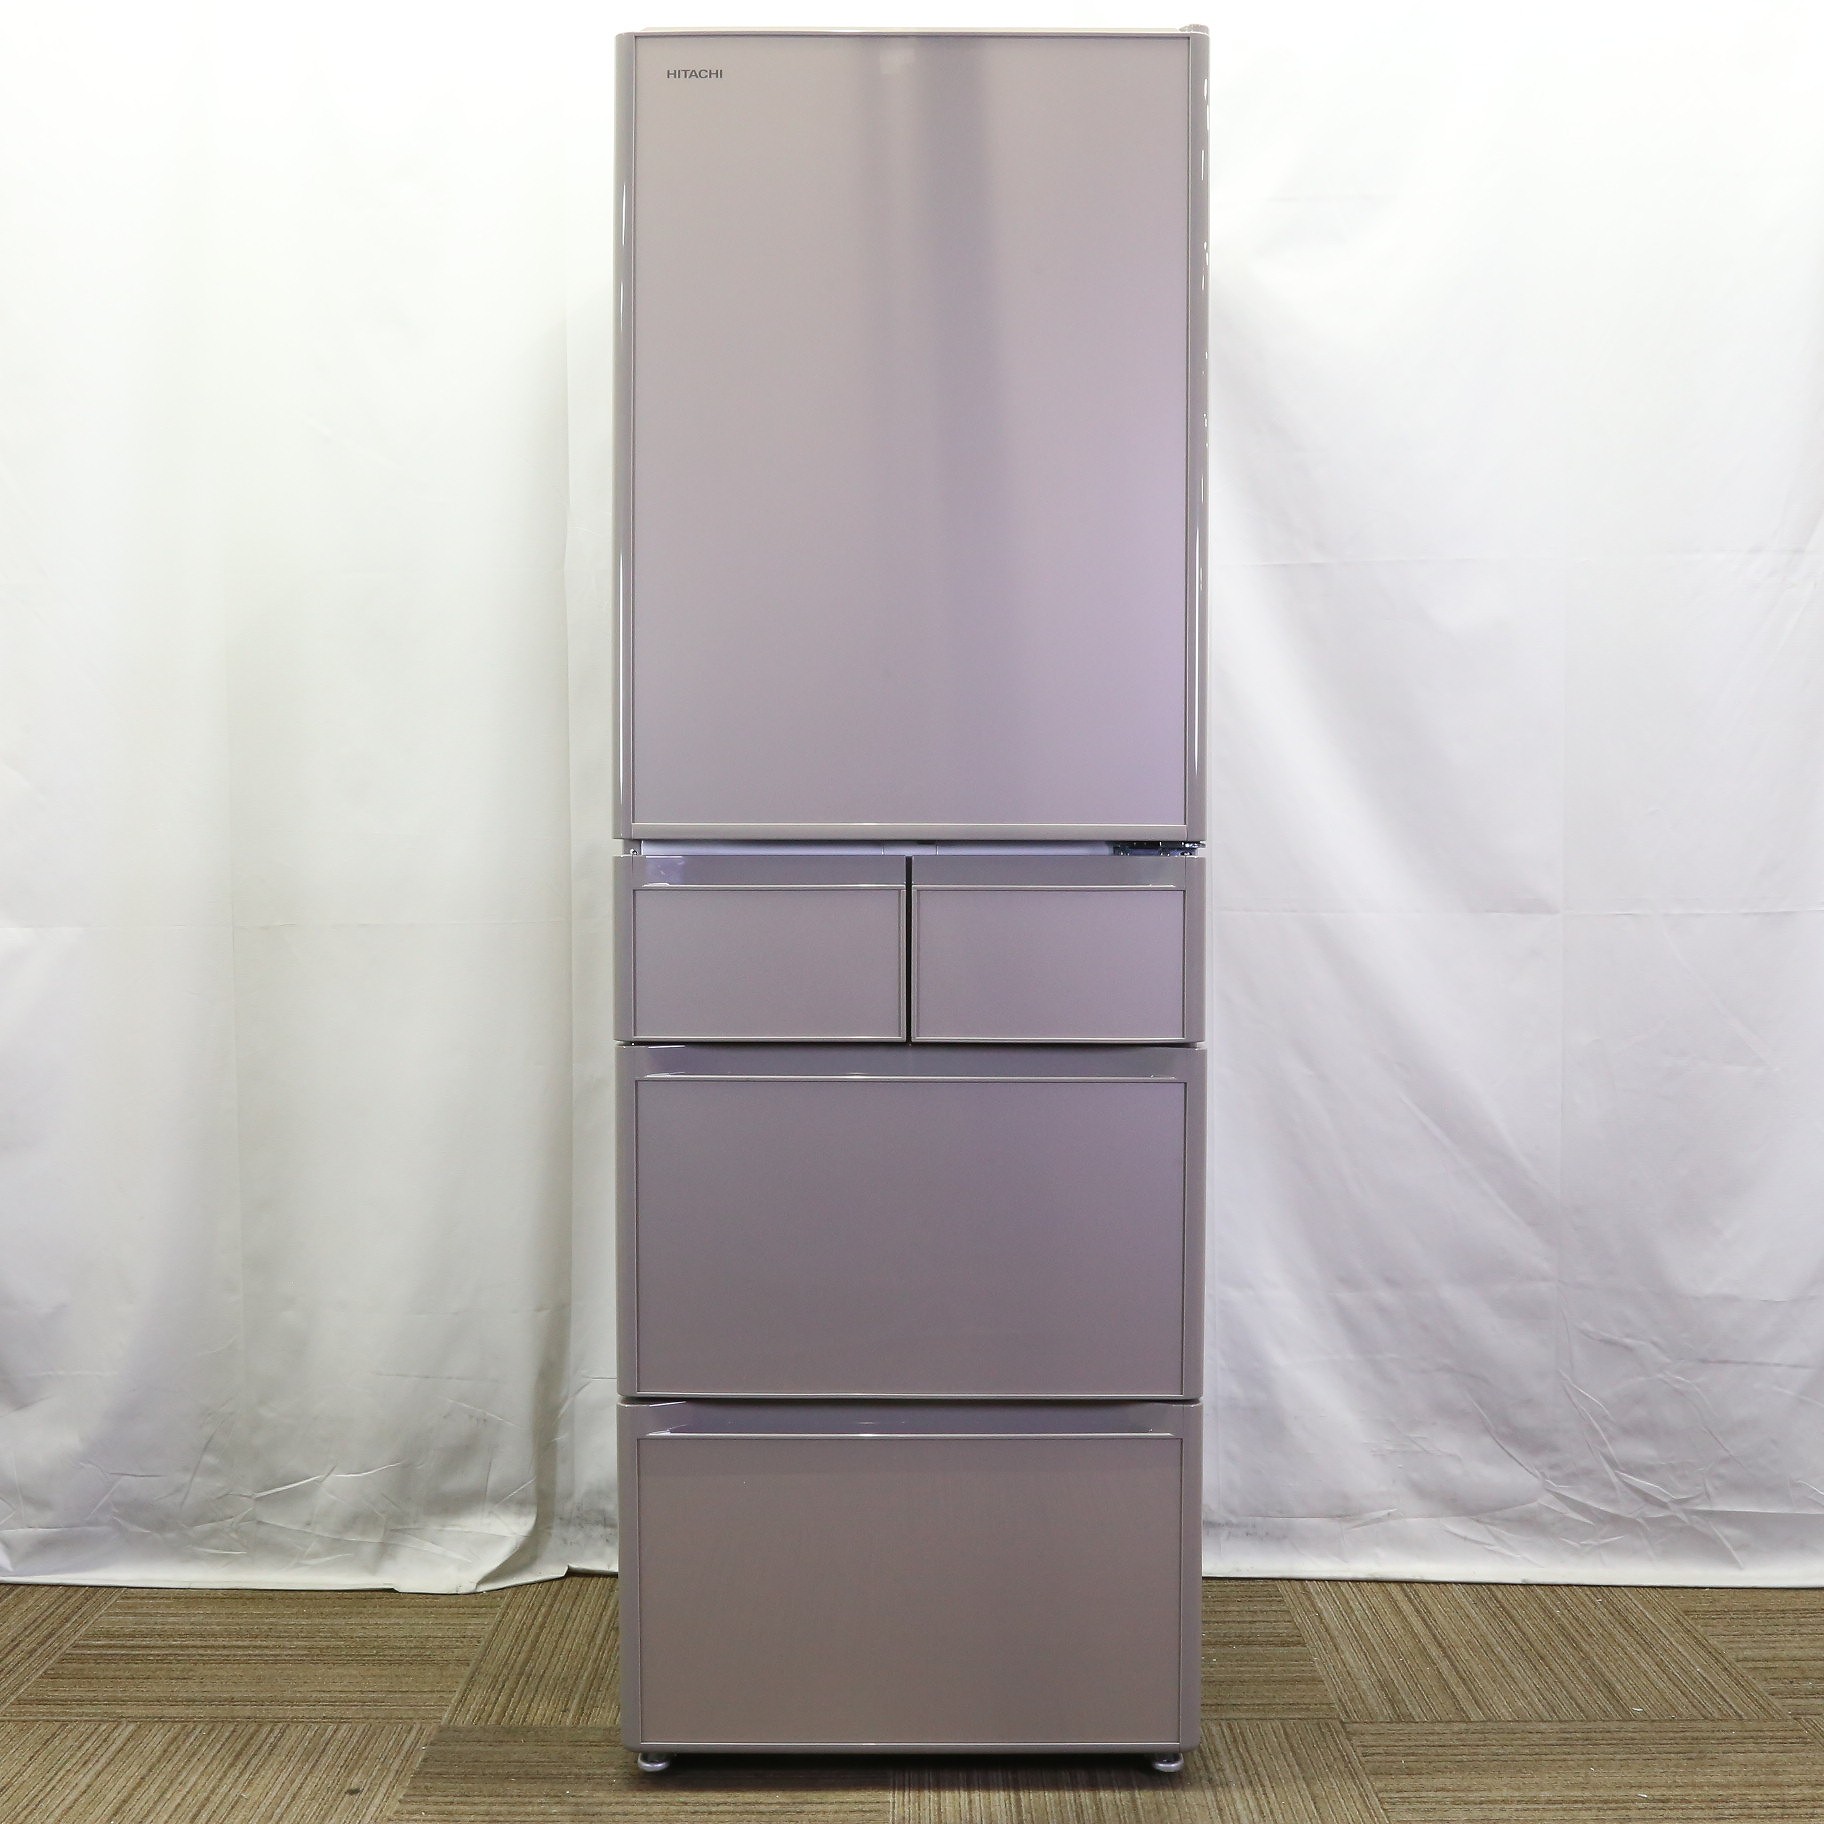 売り切ります。HITACHI 冷蔵庫 2020年製品 400㍑ - 冷蔵庫